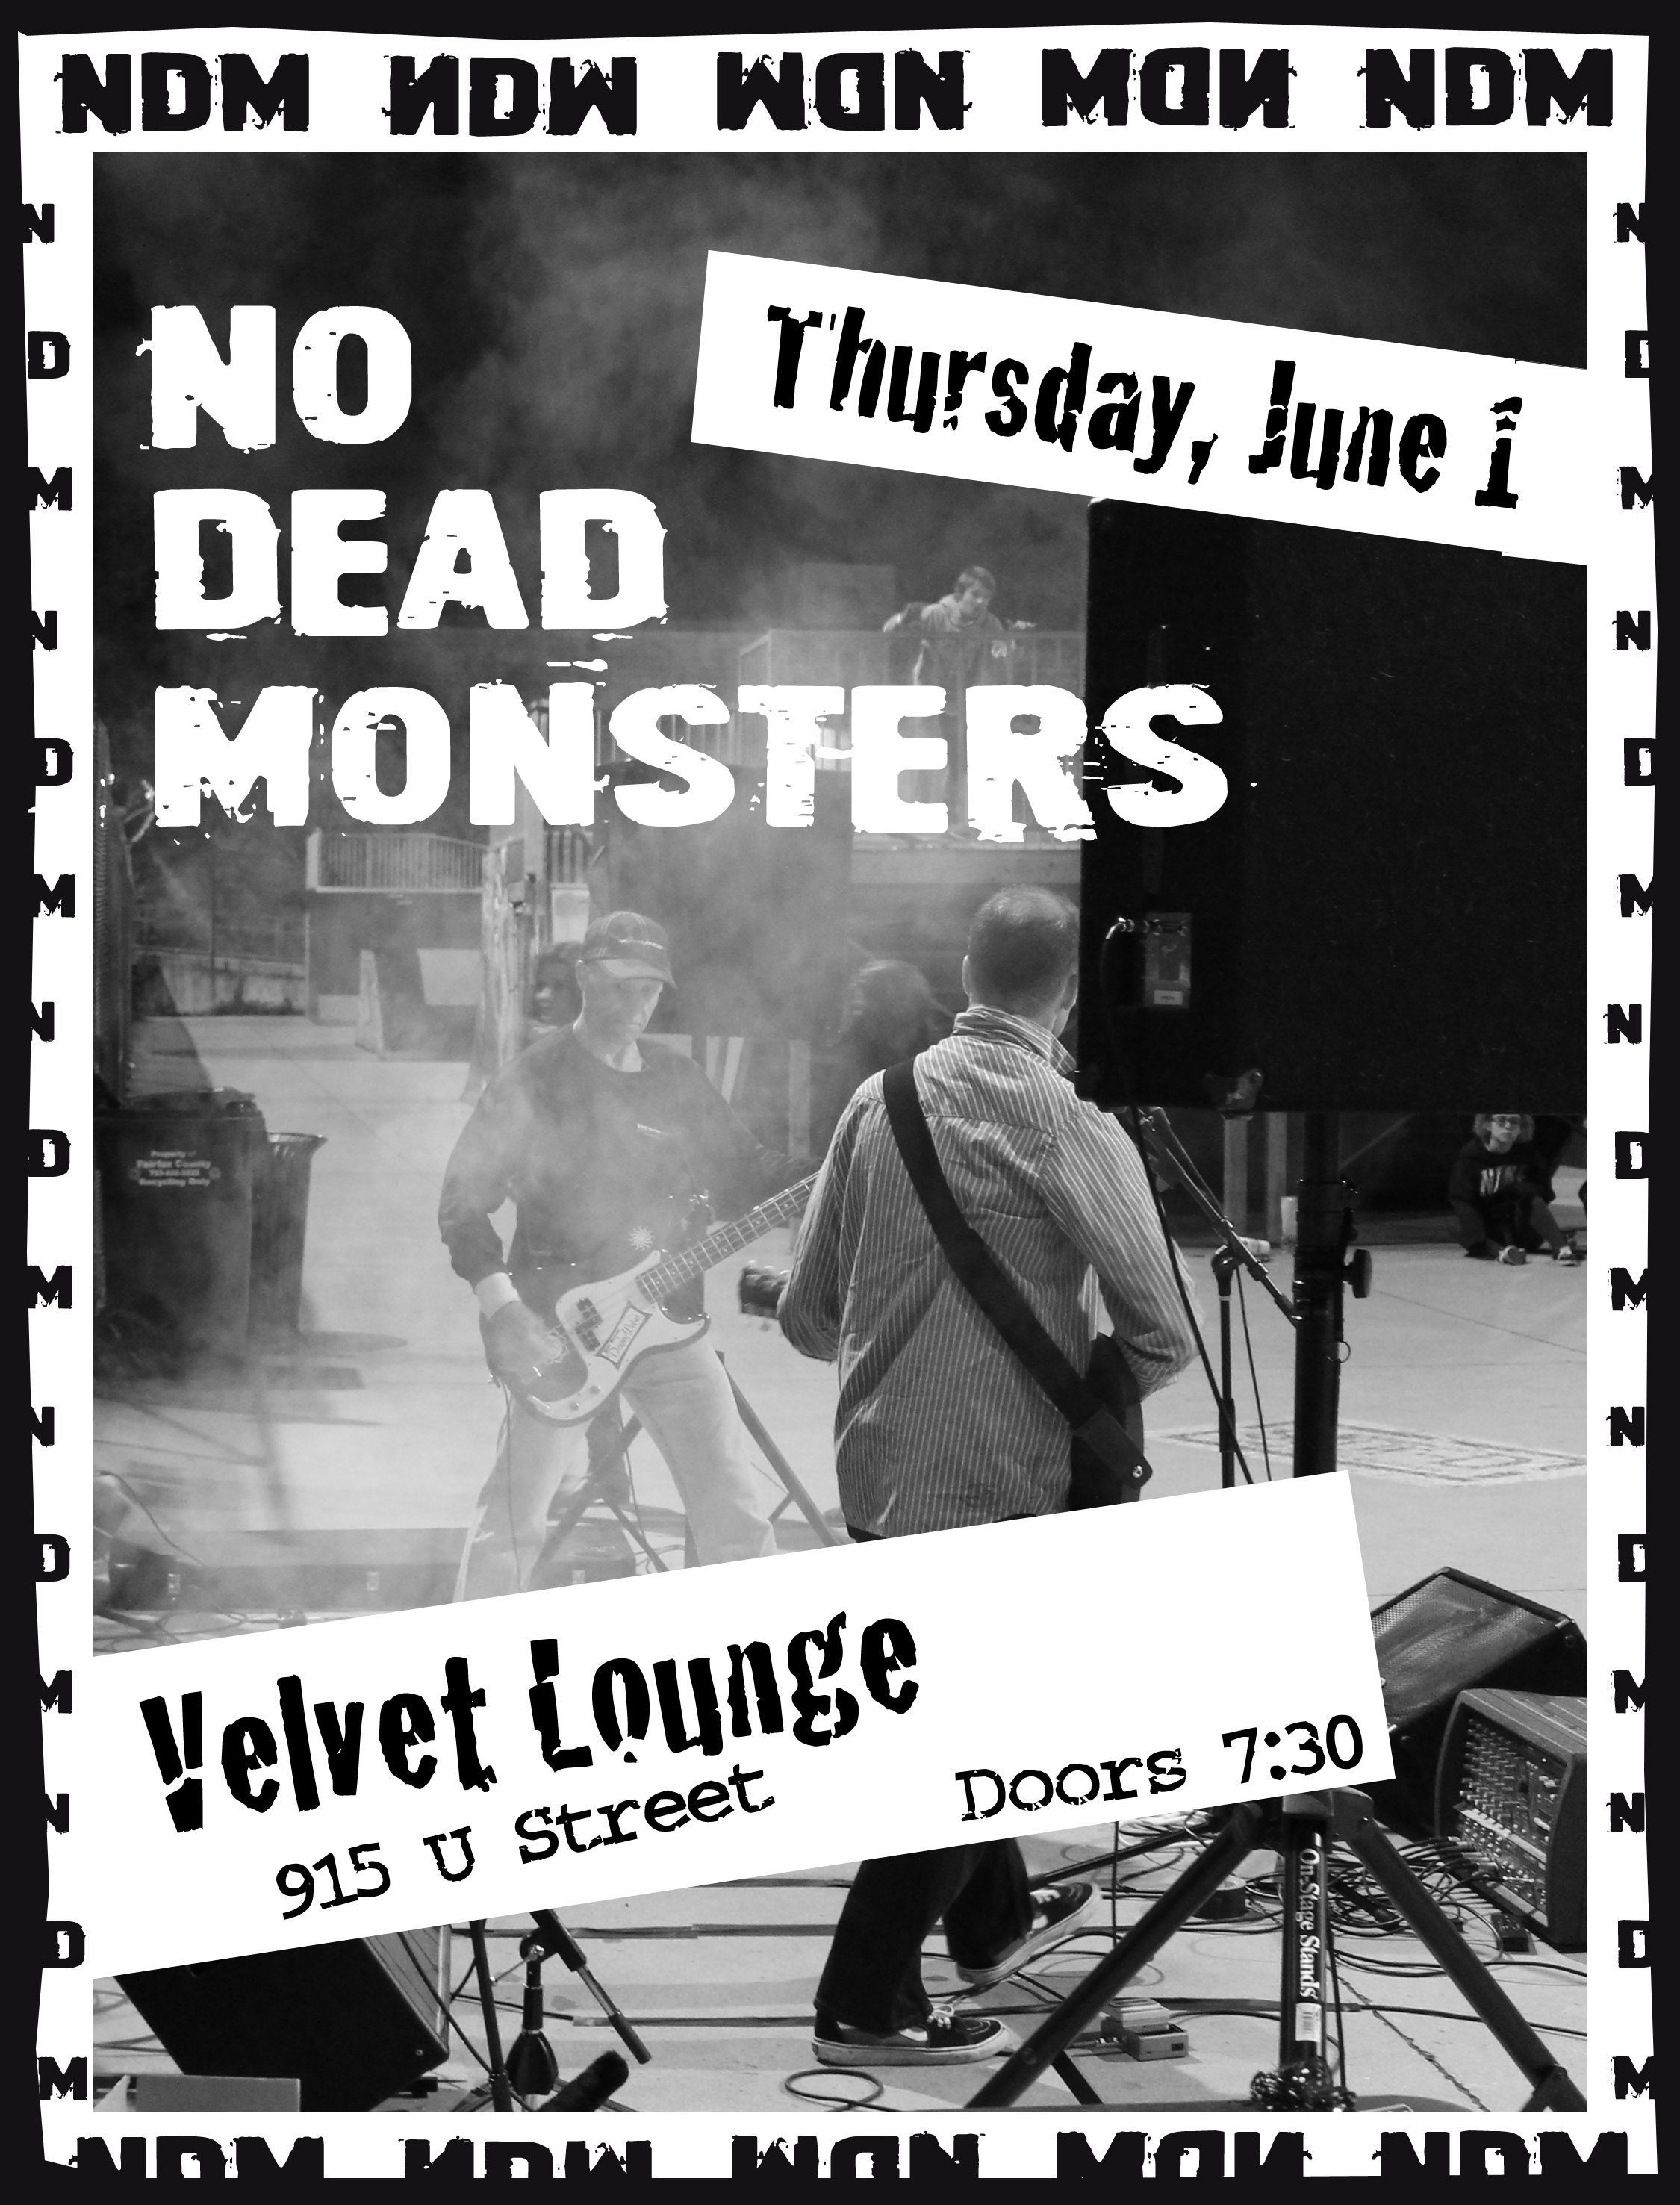 No Dead Monsters Velvet Lounge show flyer